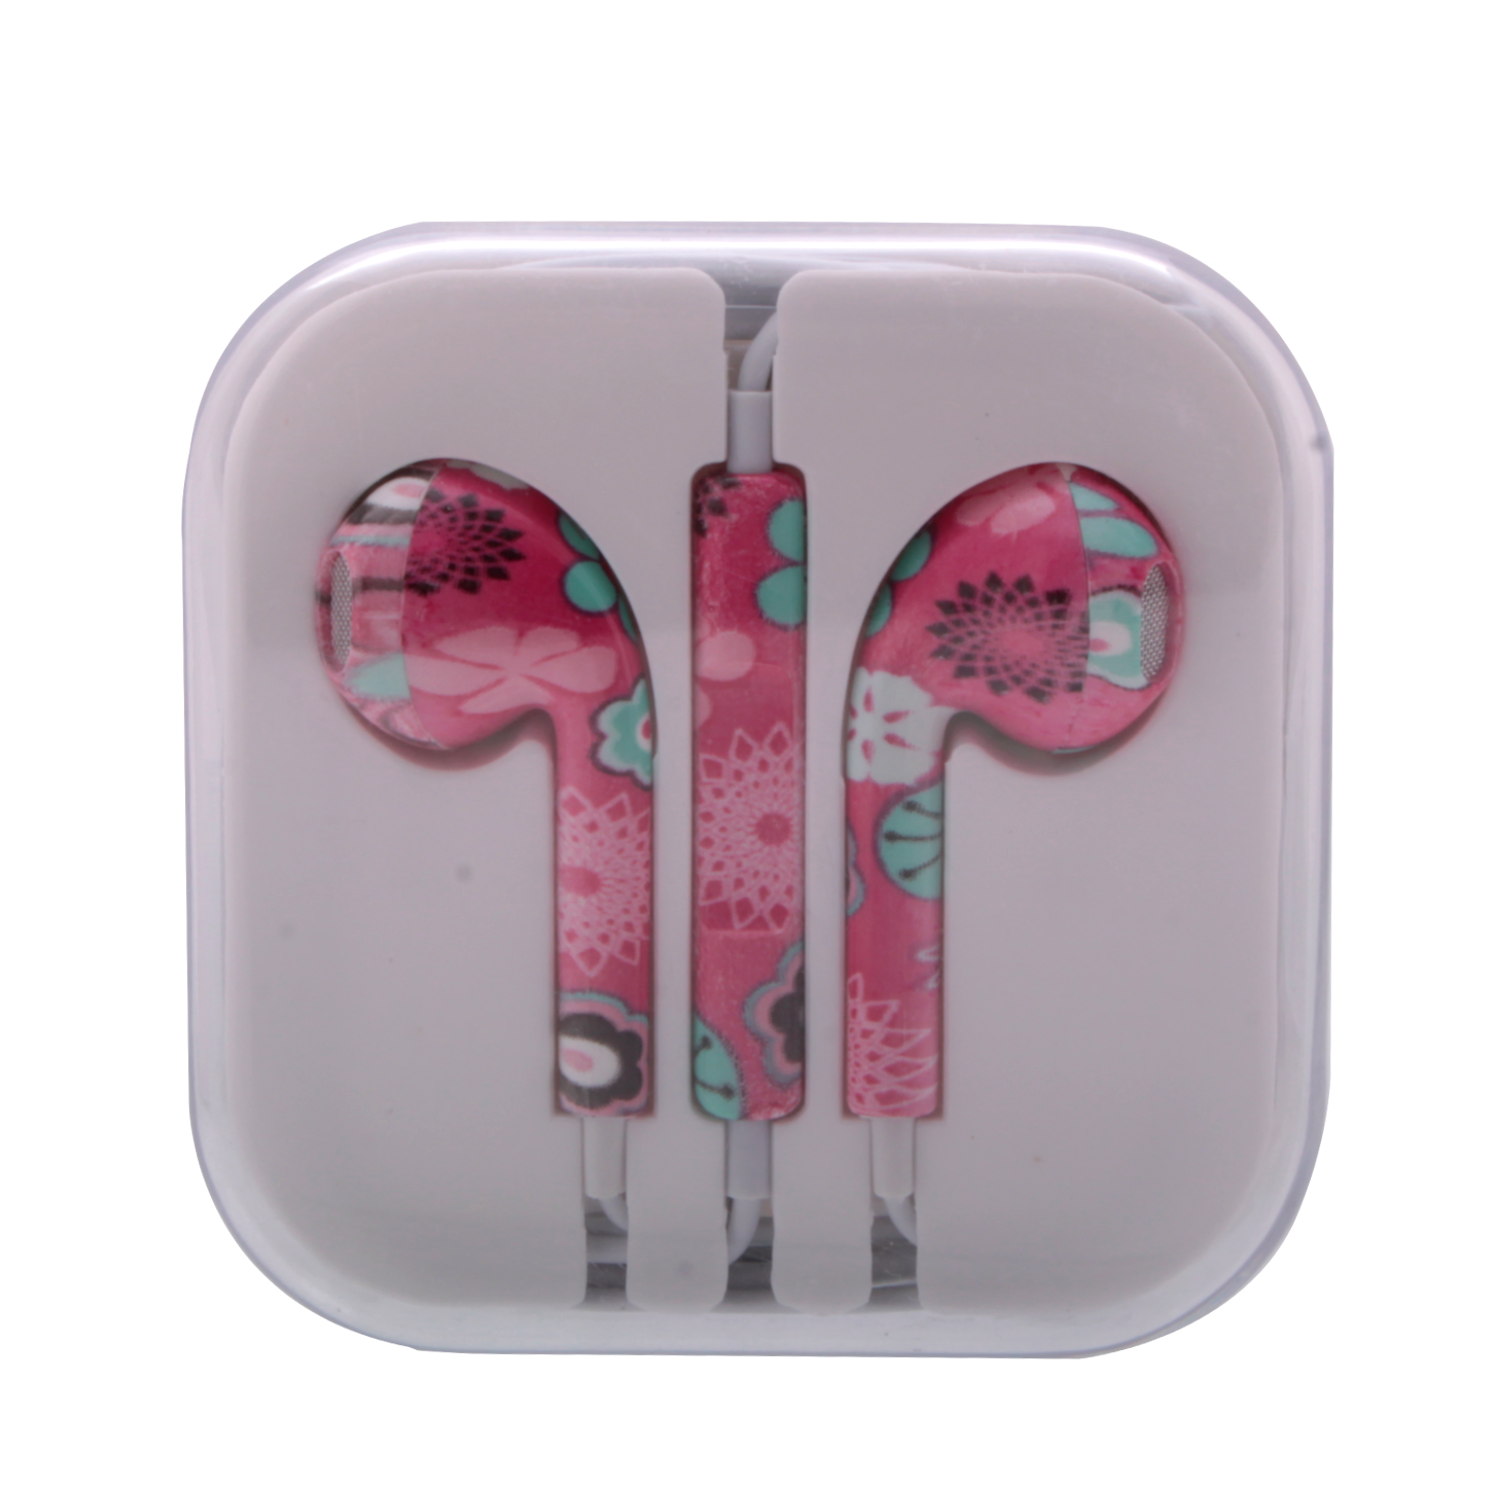 Гарнитура для iPhone (3,5мм) с рисунками цветы розовые ОРИГИНАЛ